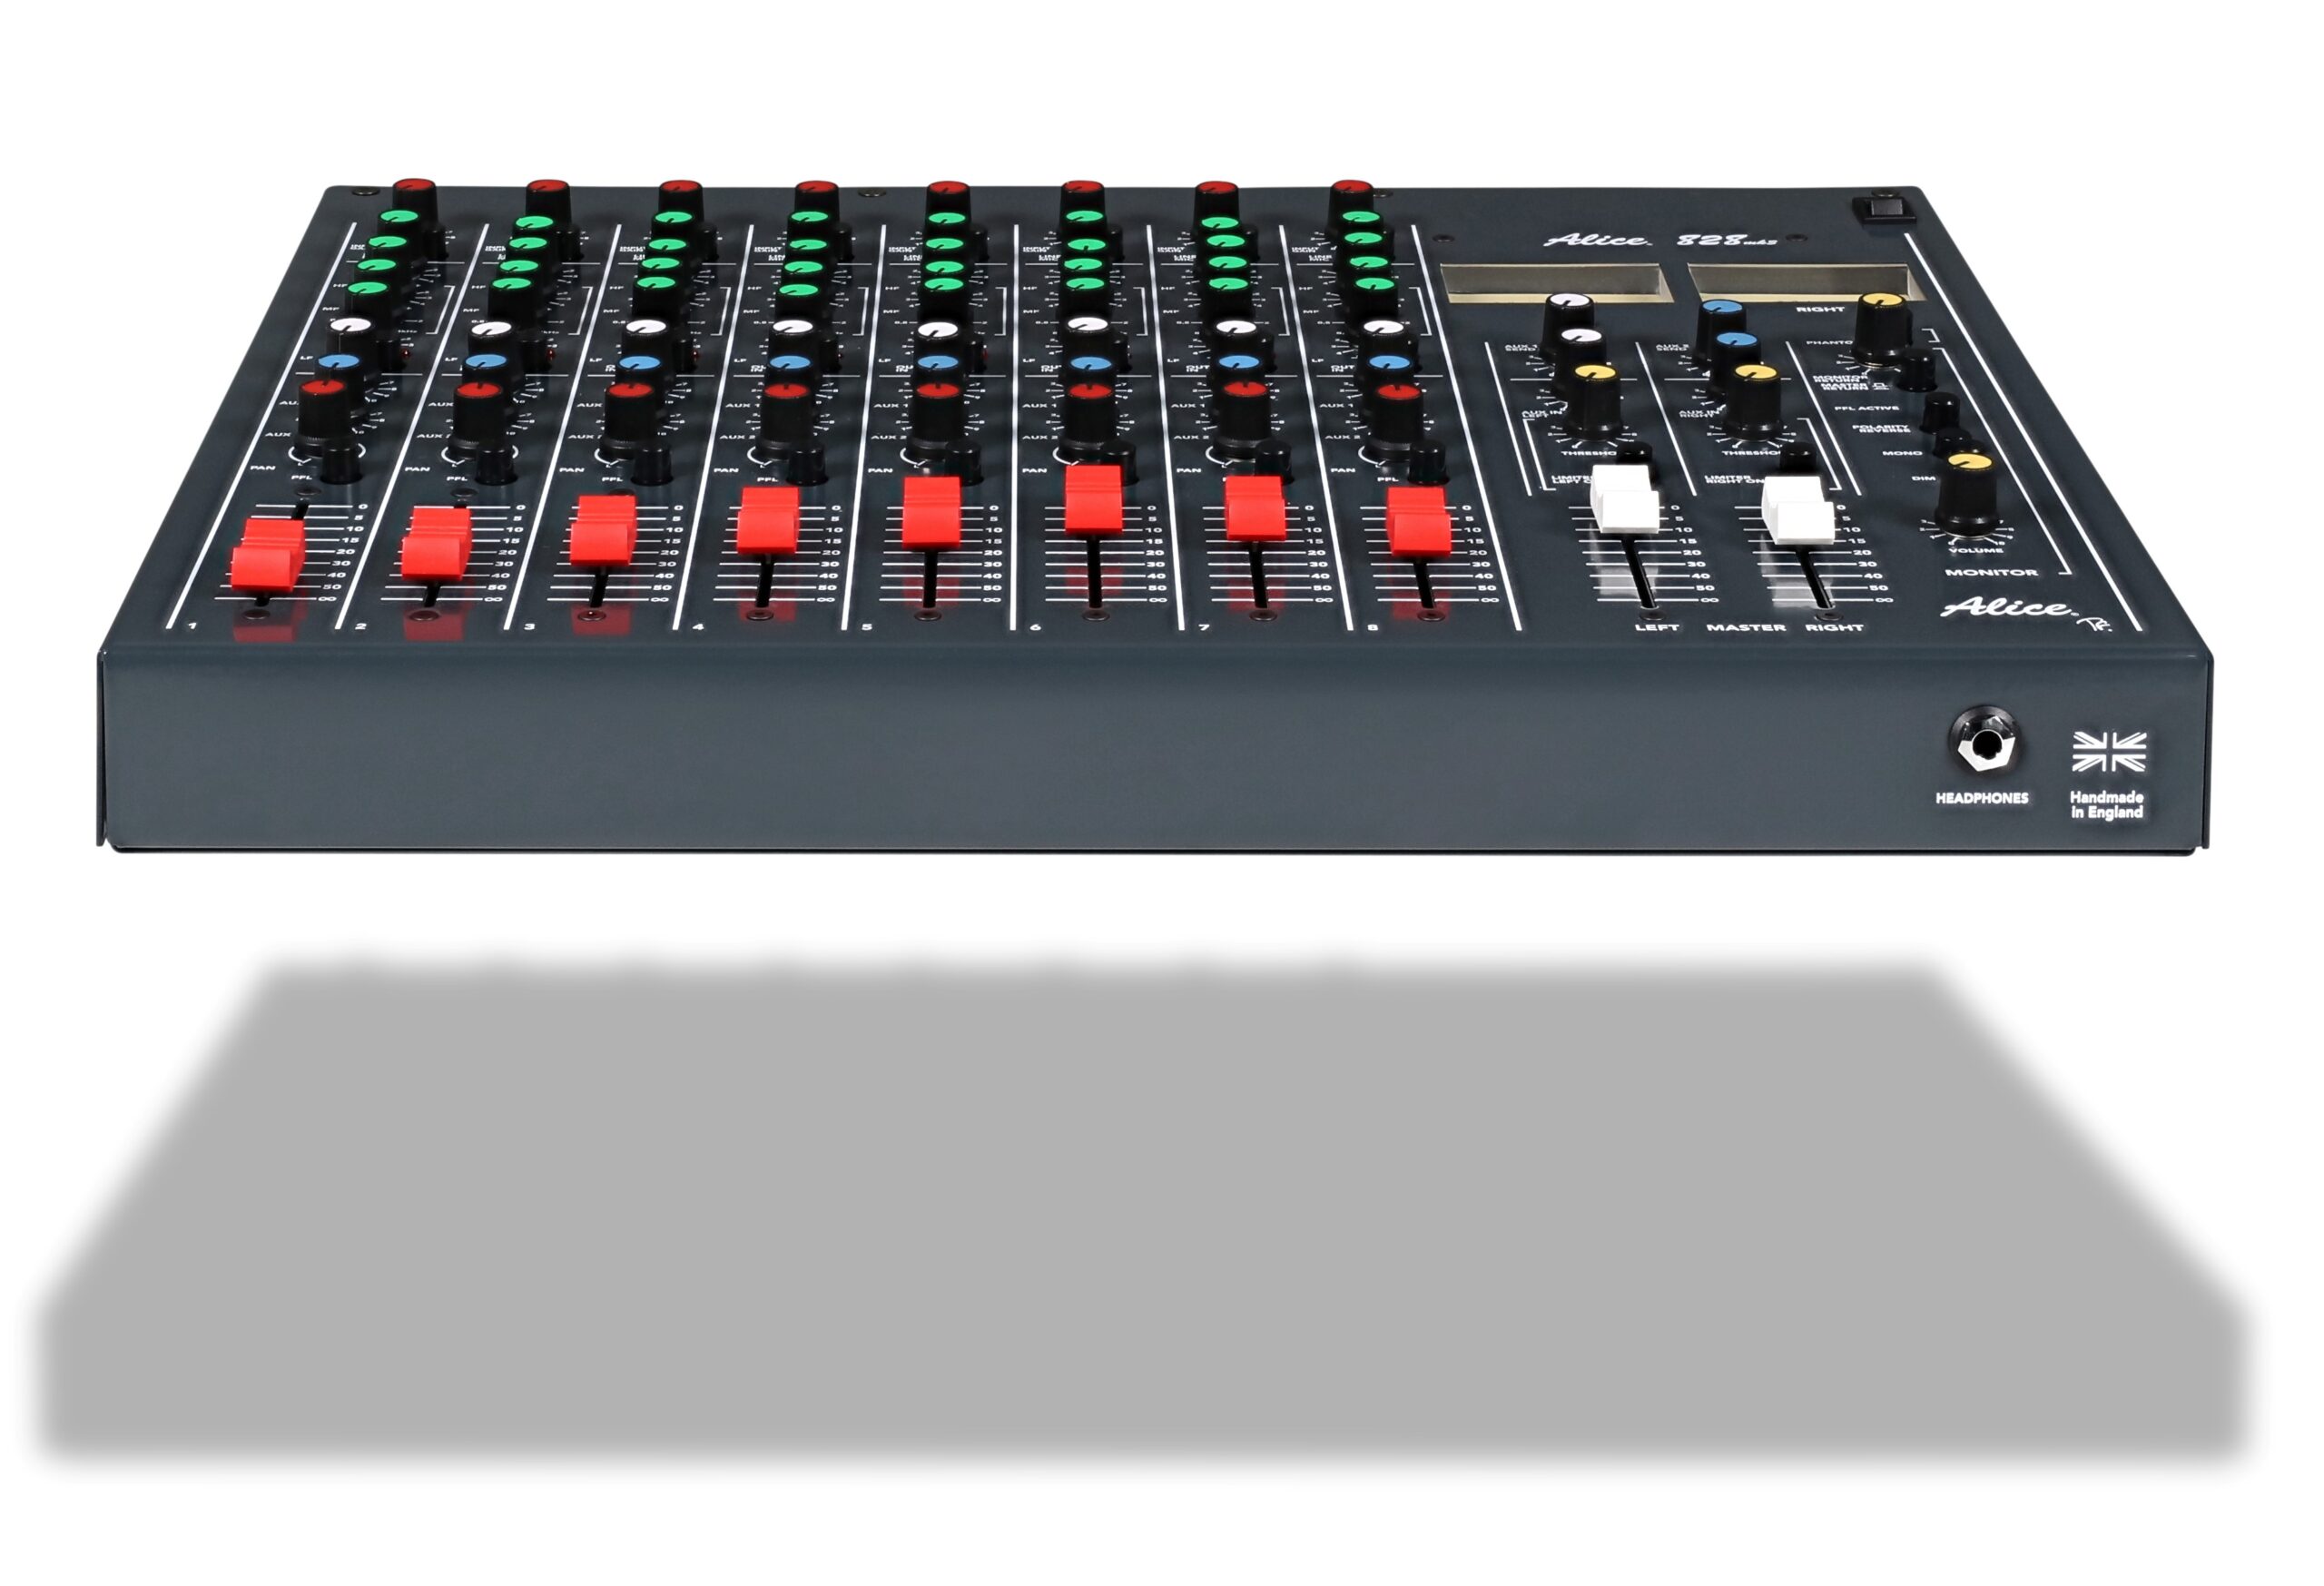 Alice 828 MK3 Mixing Desk - 8 mic/line channels